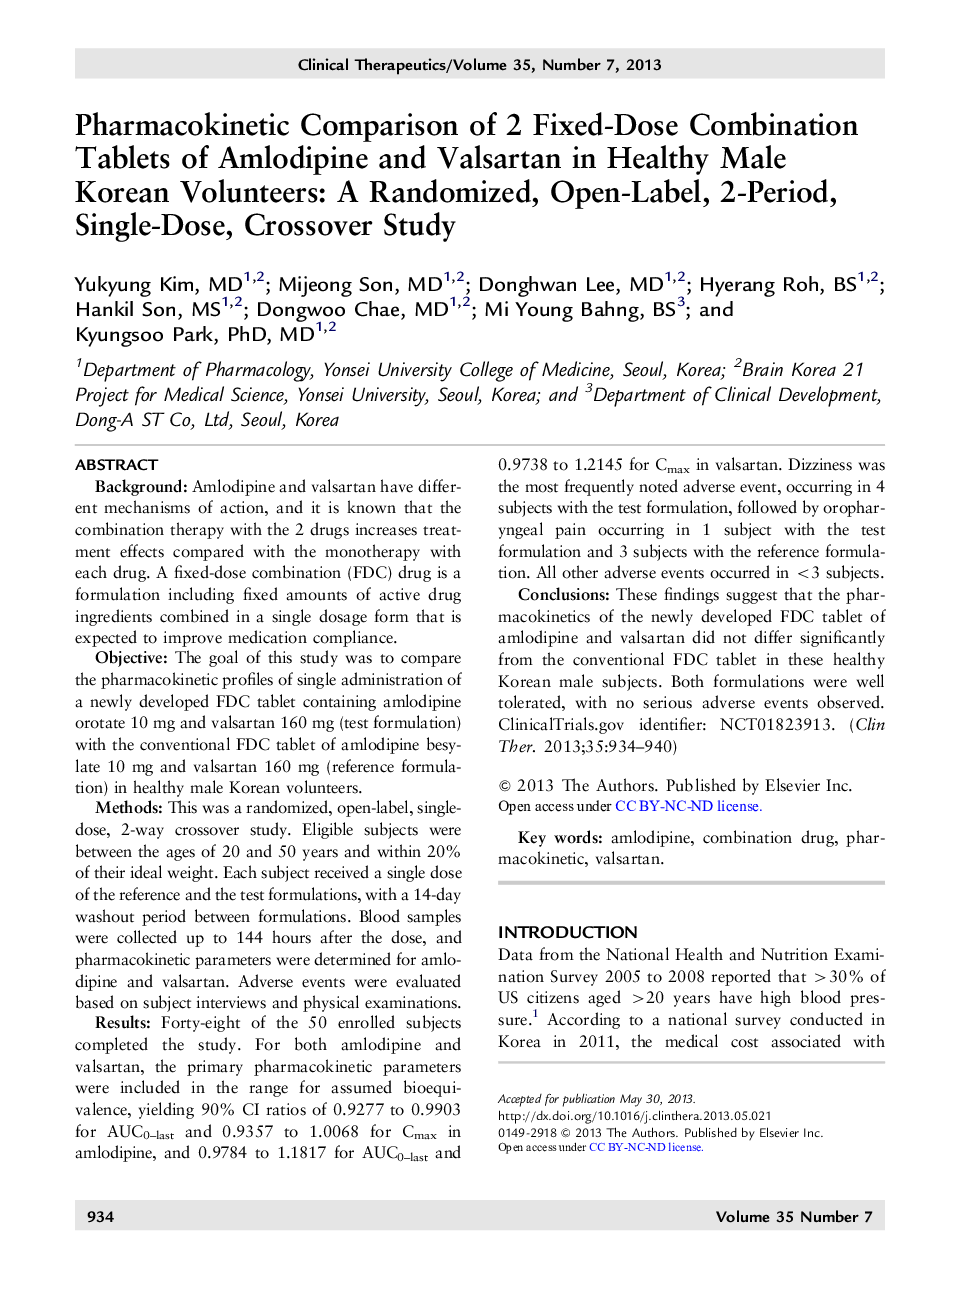 مقایسه فارماکوکینتیکی دو قرص ترکیبی ثابت آملودیپین و وارسراتان در داوطلبان سالم کره جنوبی: یک مطالعه تجربی، دوزبانه، یک مطالعه کراسورو 